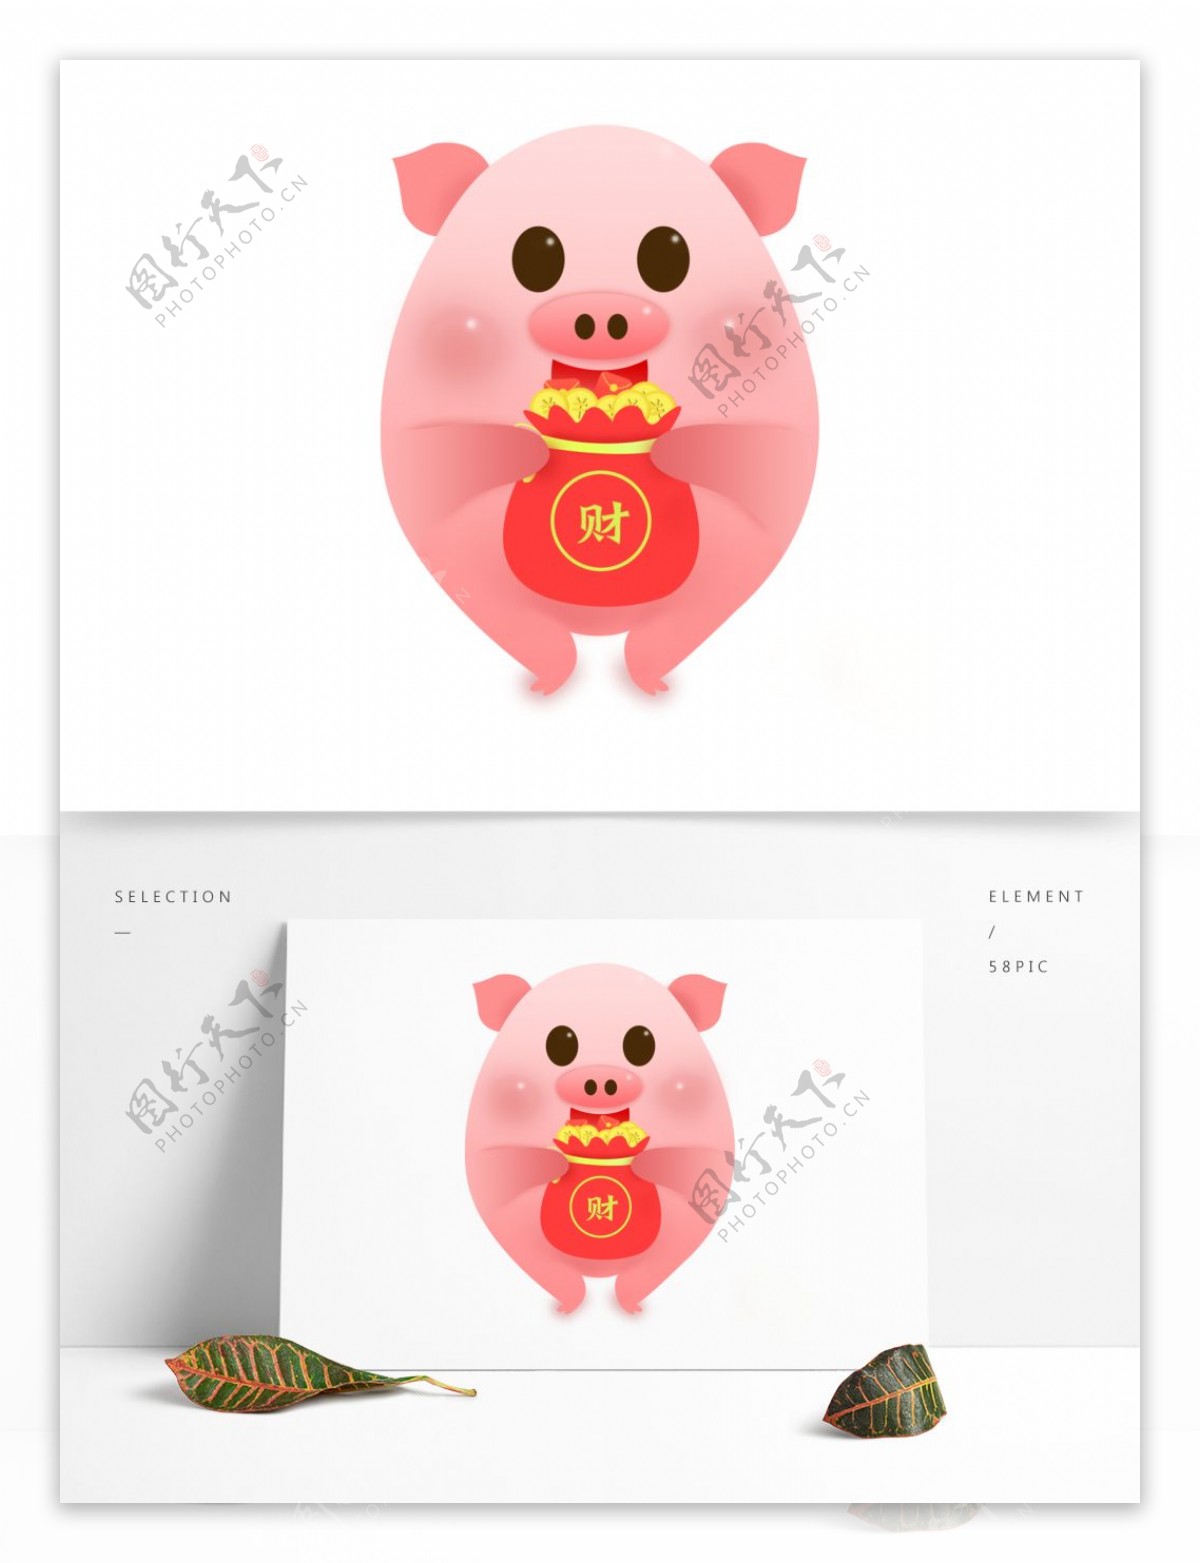 猪财神袋粉红卡通形象可商用元素